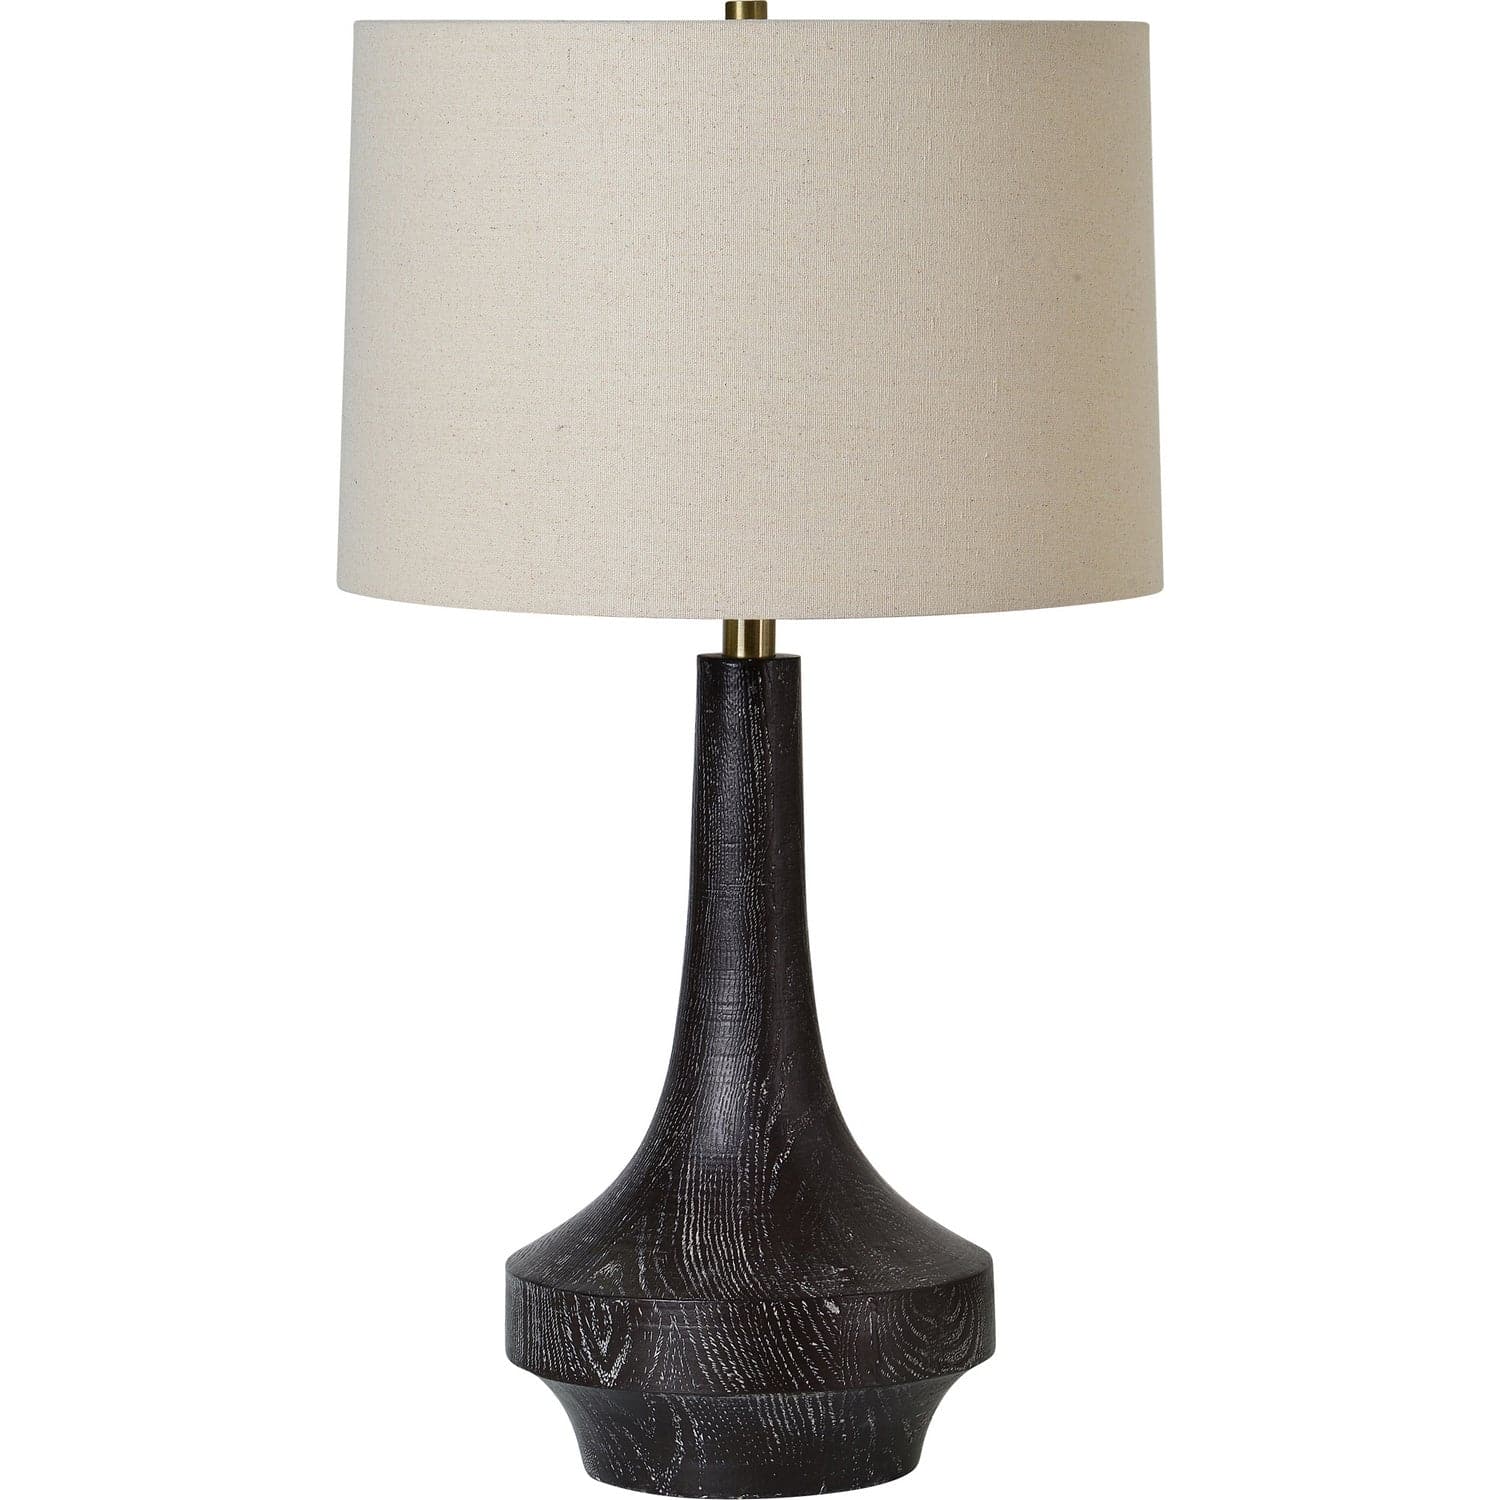 Renwil - LPT1187 - One Light Table Lamp - Truro - Painted Dark Brown Wood Grain,Beige